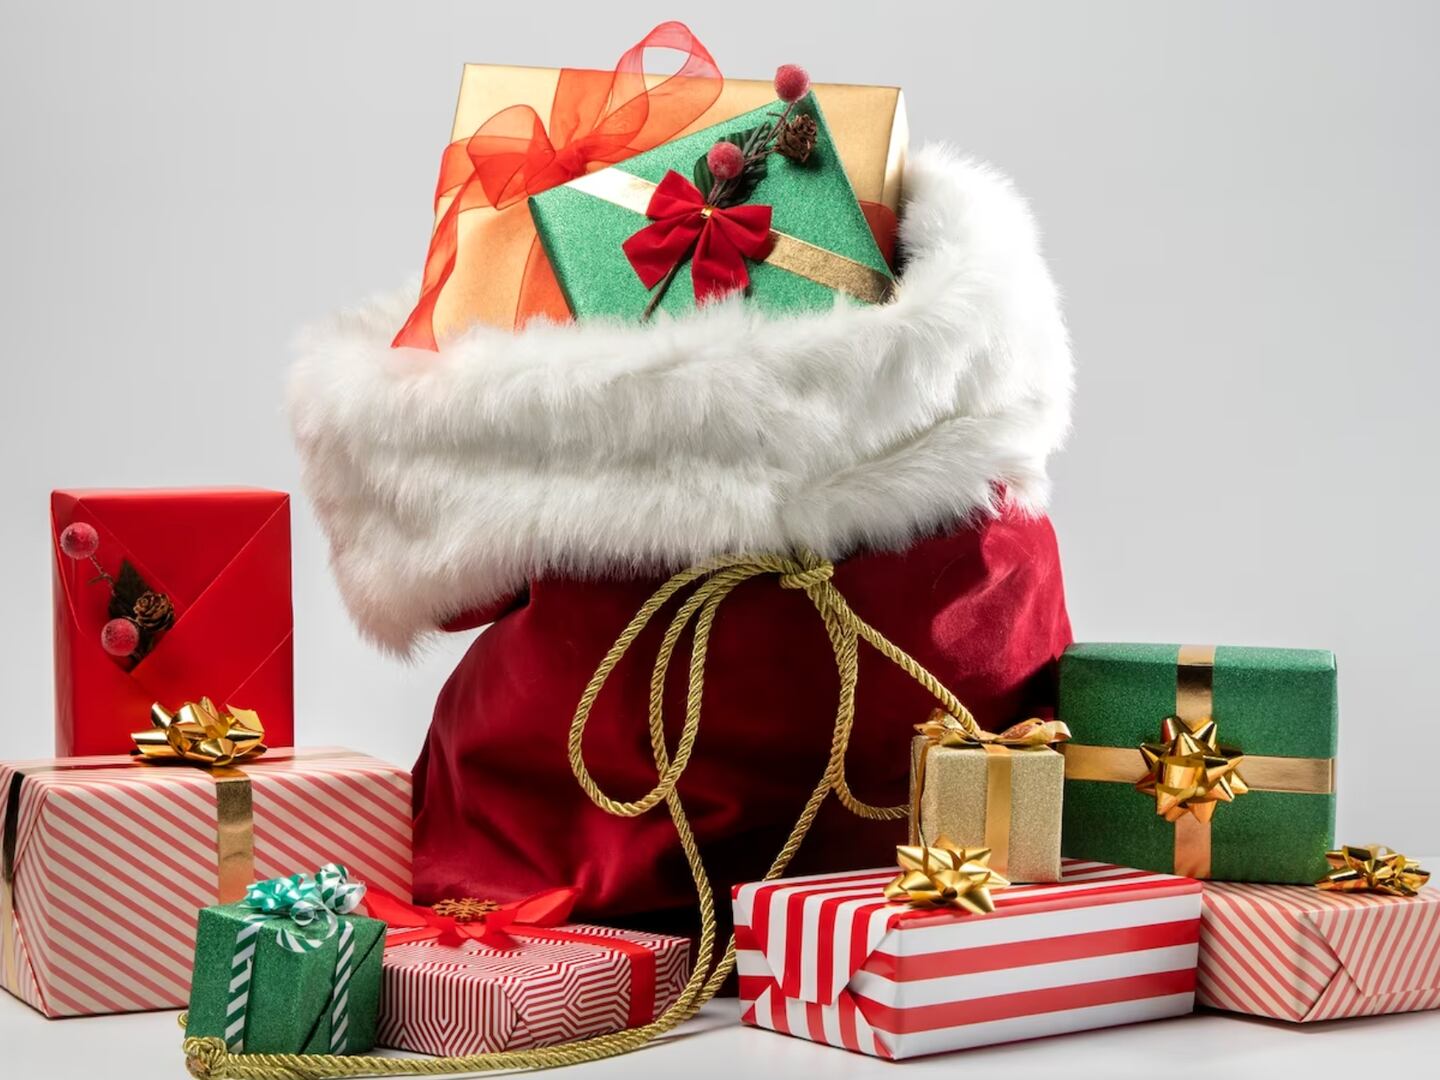 Descubre las cajas sorpresa temáticas para regalar esta Navidad